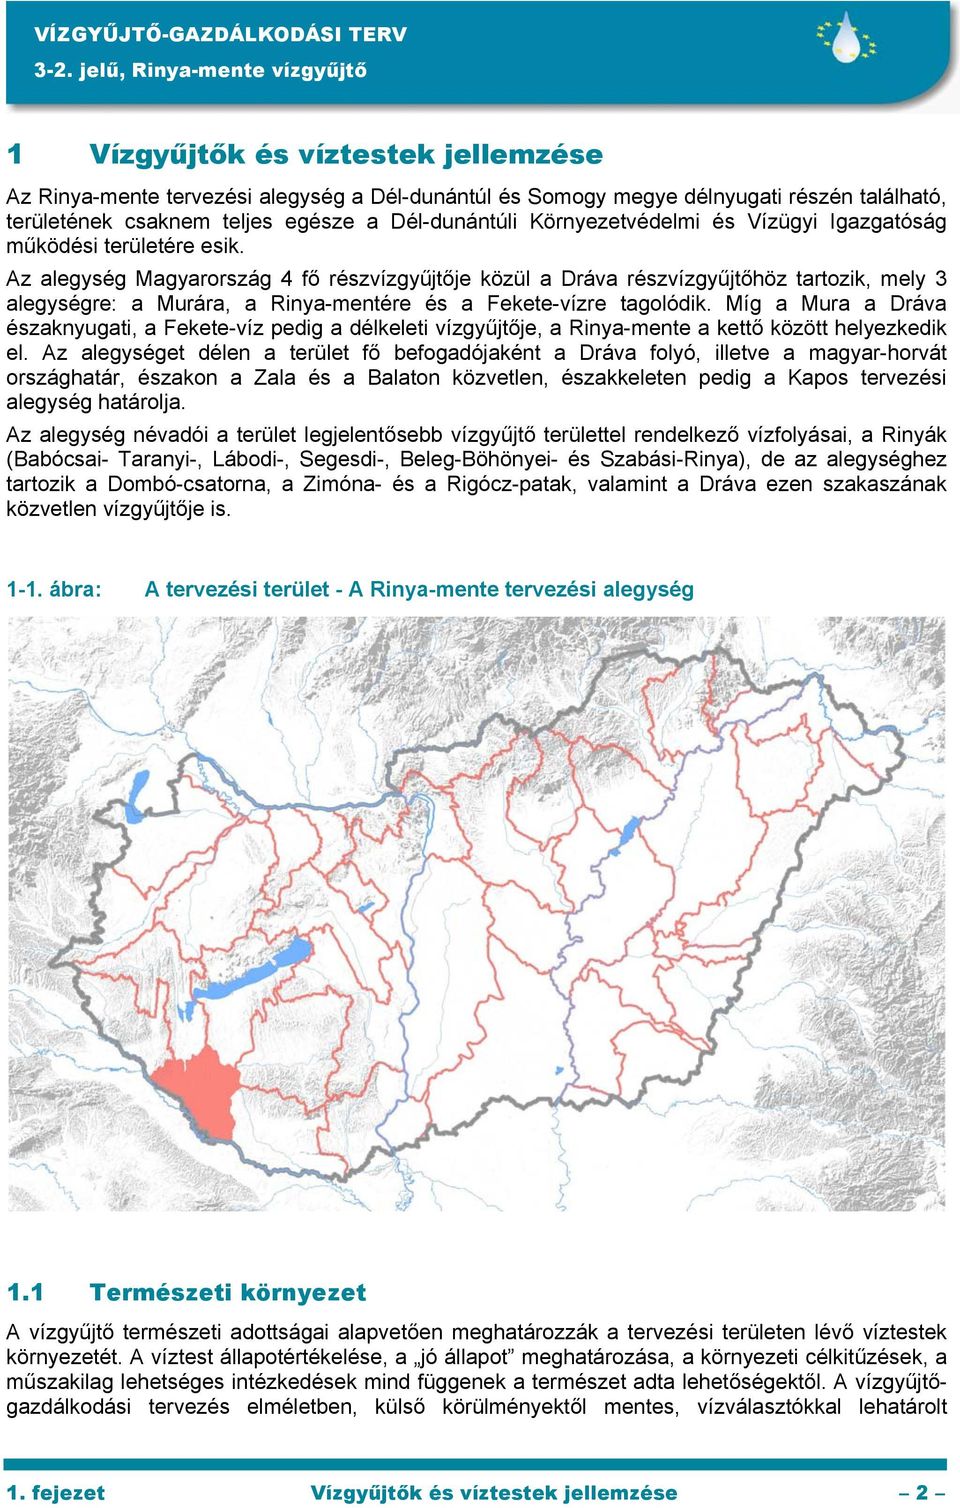 Az alegység Magyarország 4 fő részvízgyűjtője közül a Dráva részvízgyűjtőhöz tartozik, mely 3 alegységre: a Murára, a Rinya-mentére és a Fekete-vízre tagolódik.